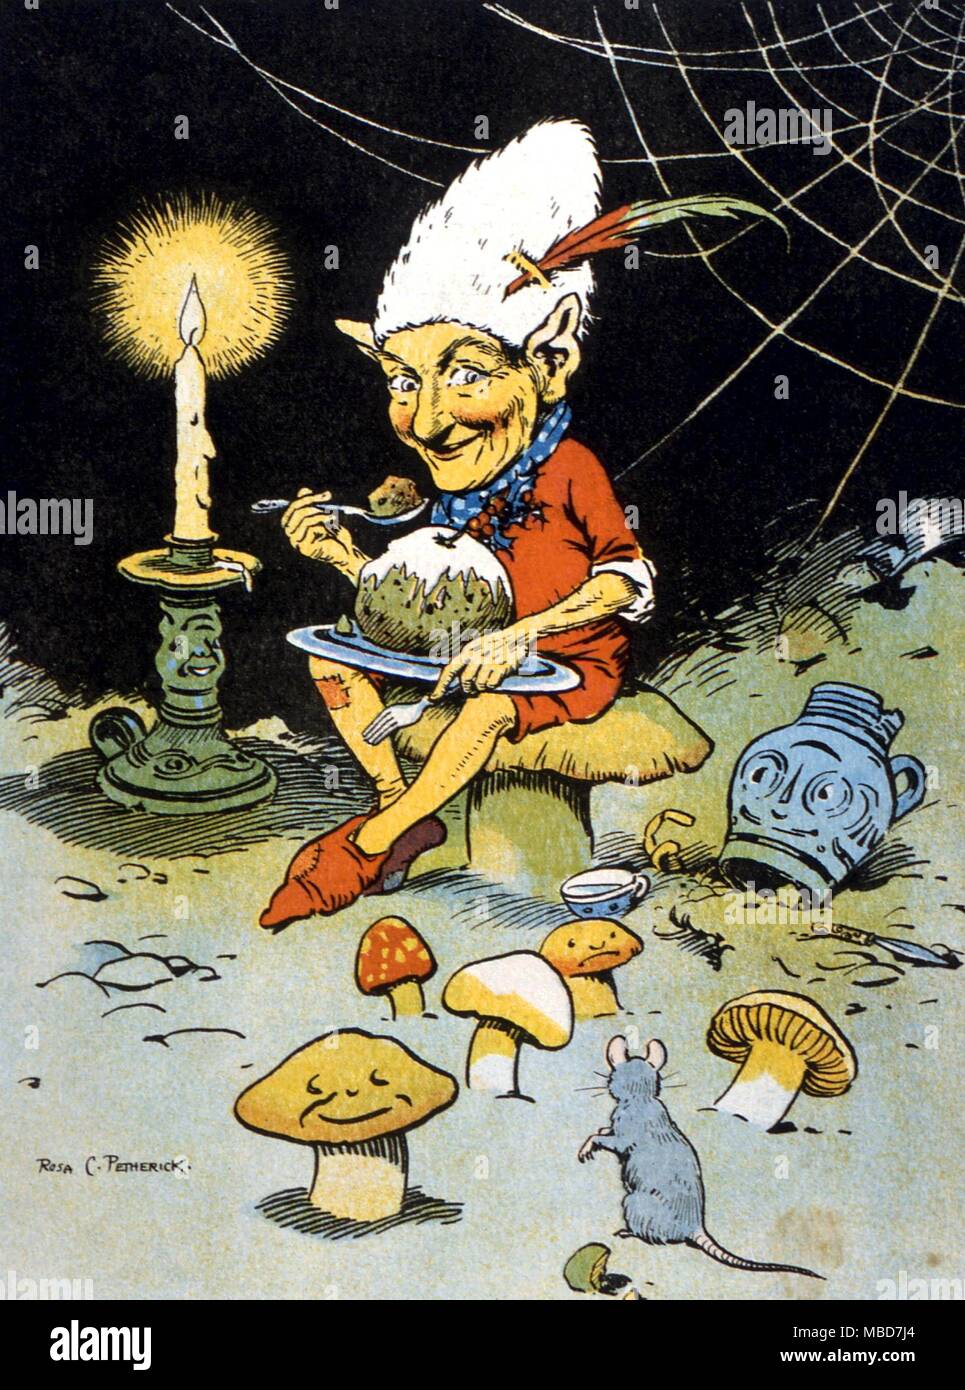 Elementare, Gnome, das Erdelementar. Bild von Rosa Petherick, ca. 1920 Stockfoto